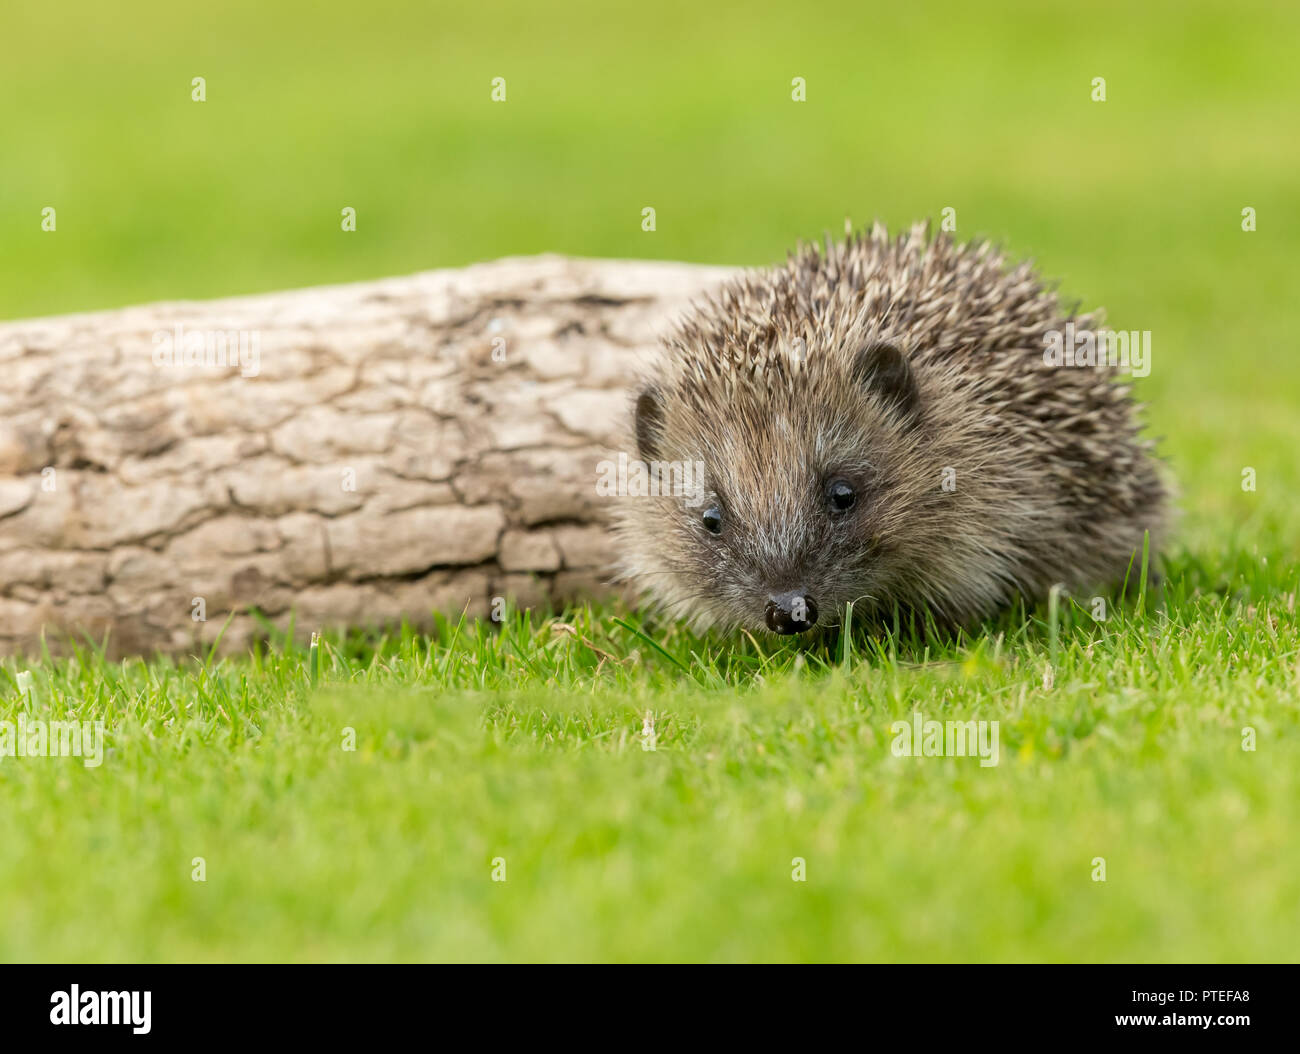 Hedgehog (Erinaceous europaeus) selvatica, hedgehog nativo nel giardino naturale habitat sul verde prato rivolto verso il lato anteriore. Orizzontale. Foto Stock